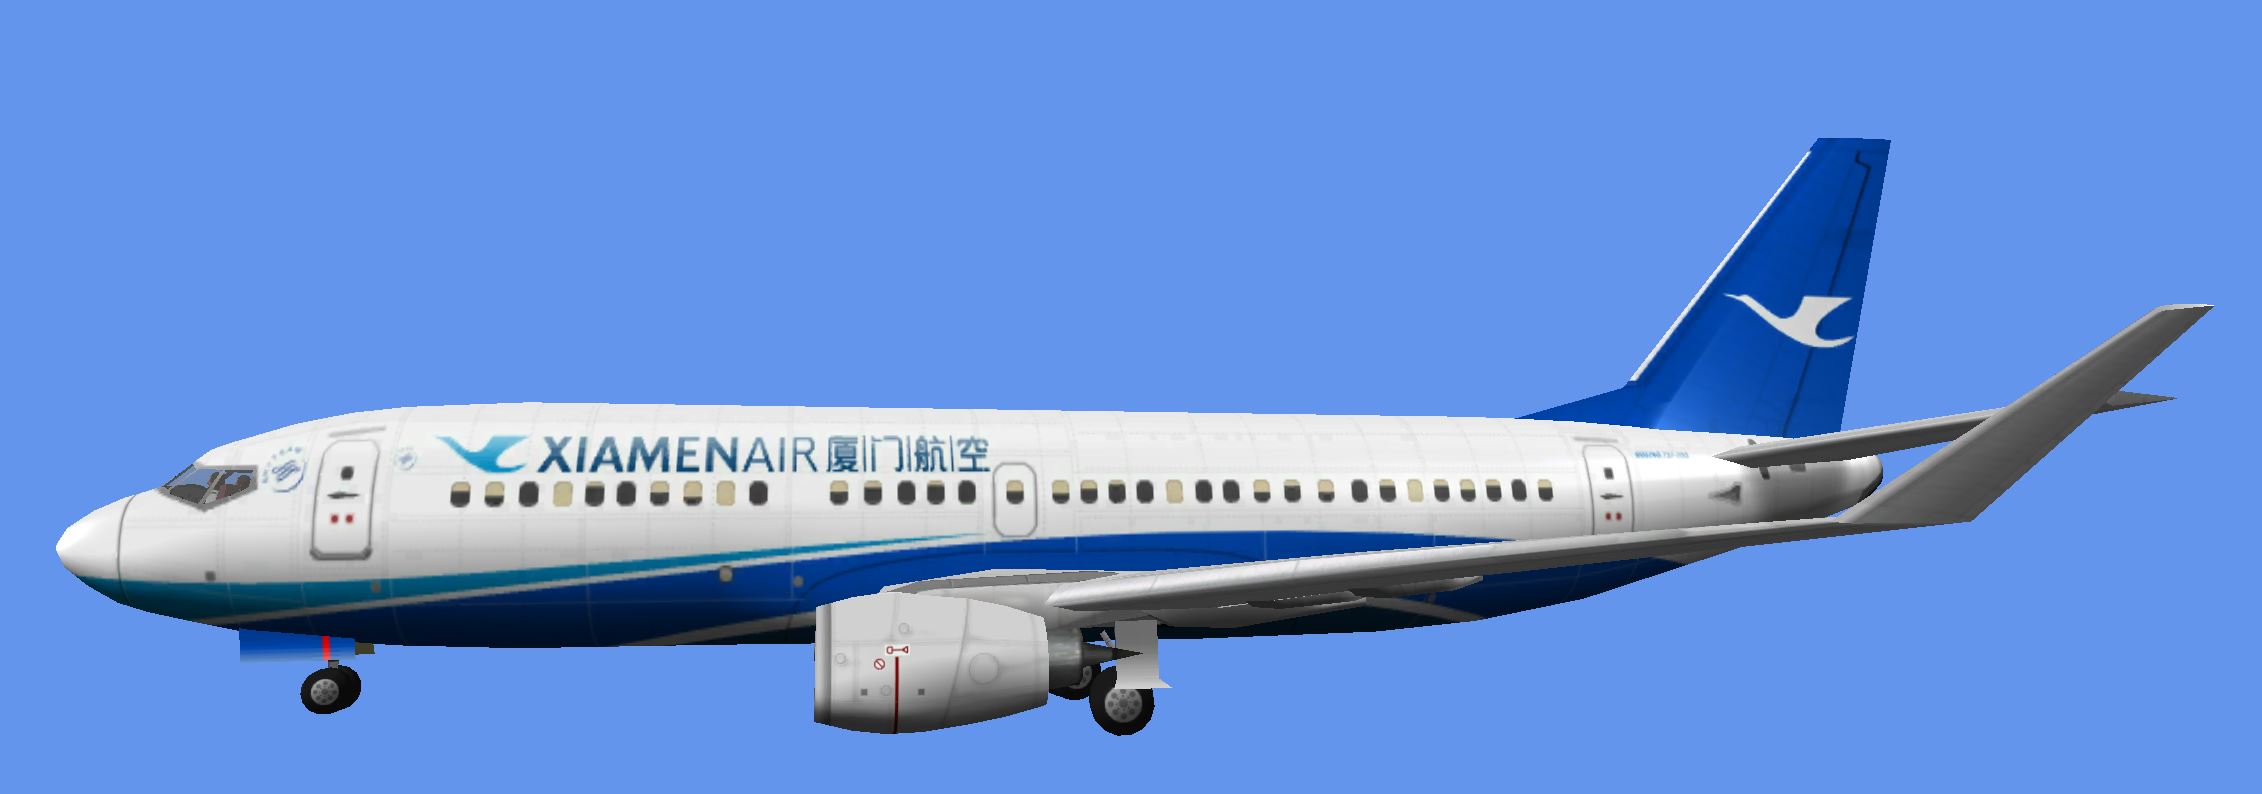 b737-700-xiamen-airlines-57461a8.jpg